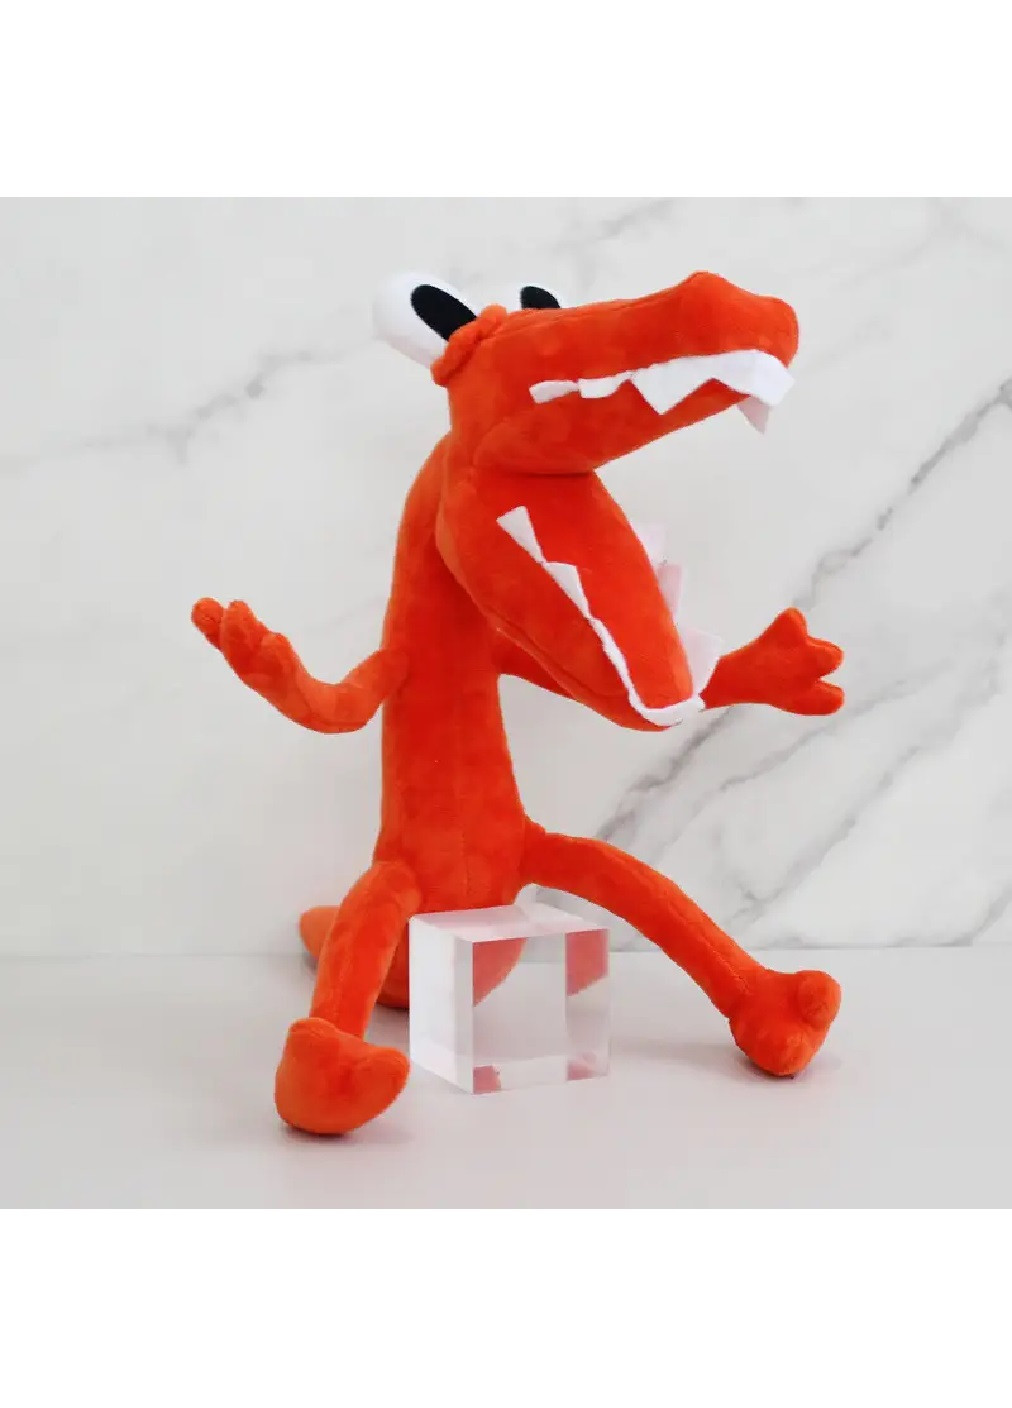 Оригінальна дитяча м'яка плюшева іграшка для дітей персонаж райдужні друзі роболокс 37 см (475400-Prob) Крокодил Оранж Unbranded (266987848)